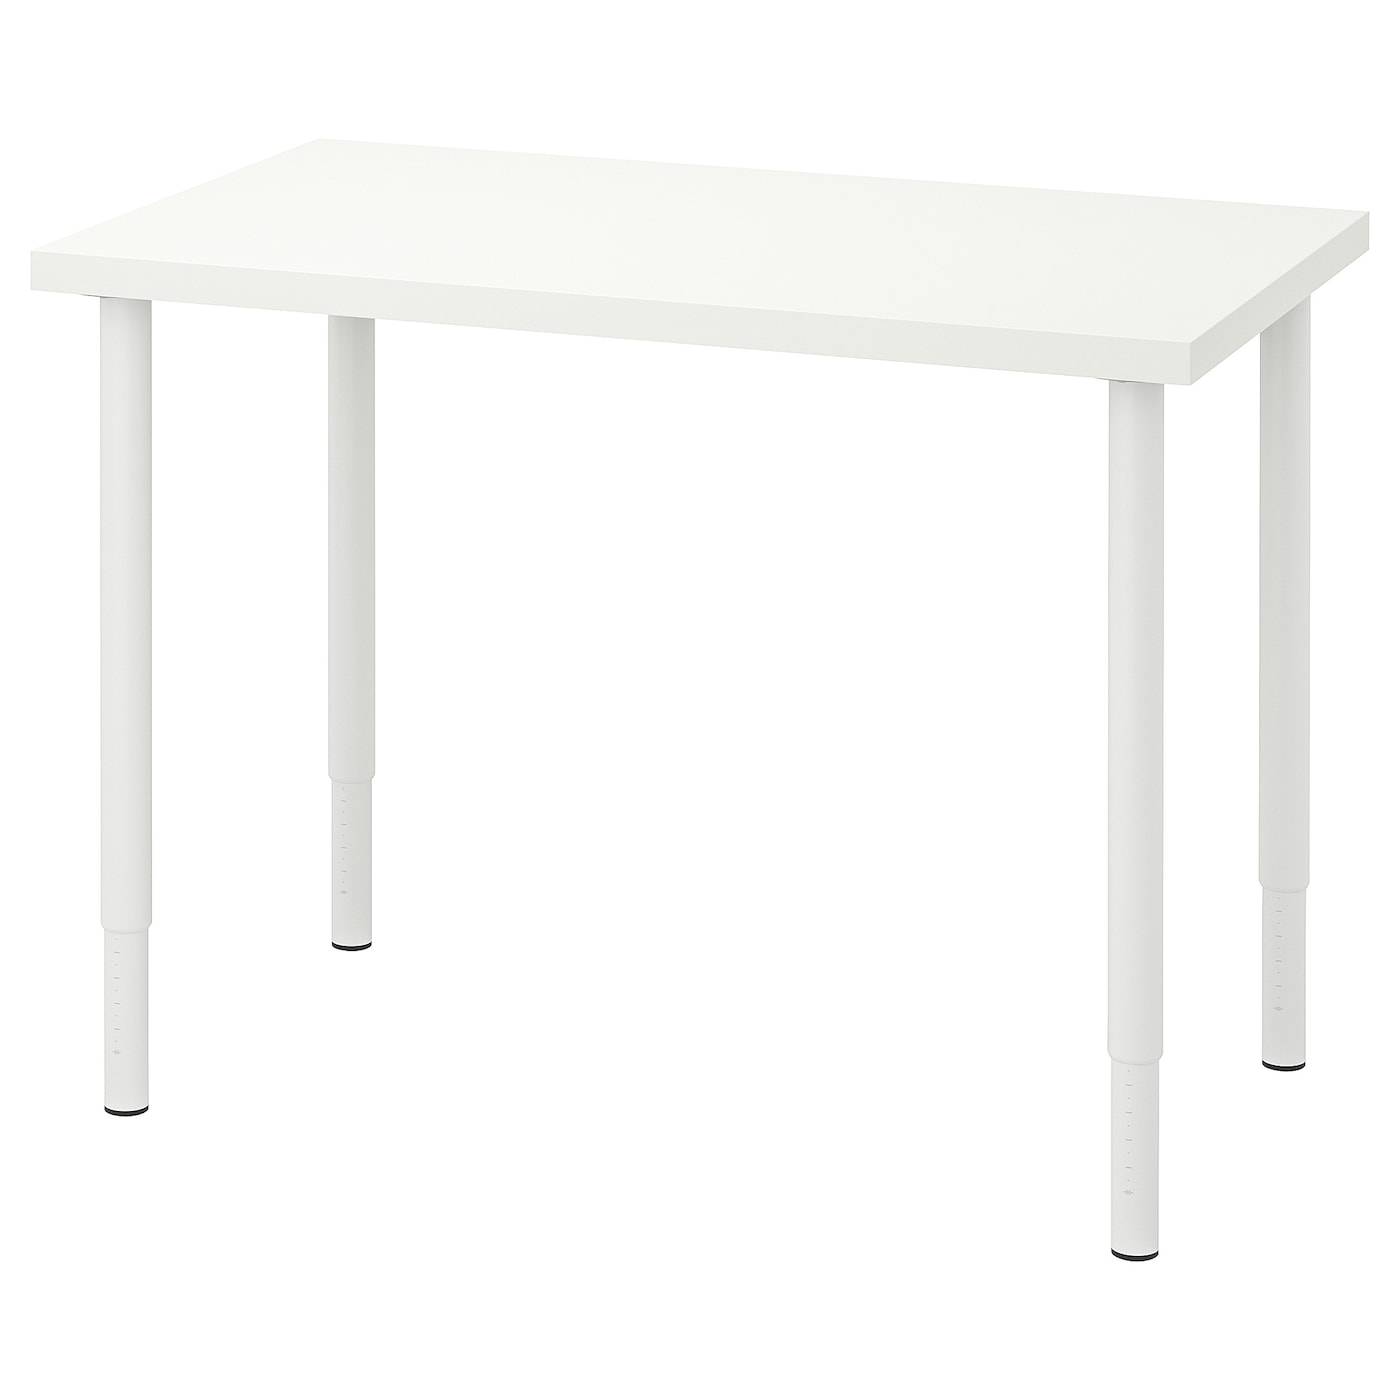 Письменный стол - IKEA LINNMON/OLOV, 100x60 см, белый, ЛИННМОН/ОЛОВ ИКЕА